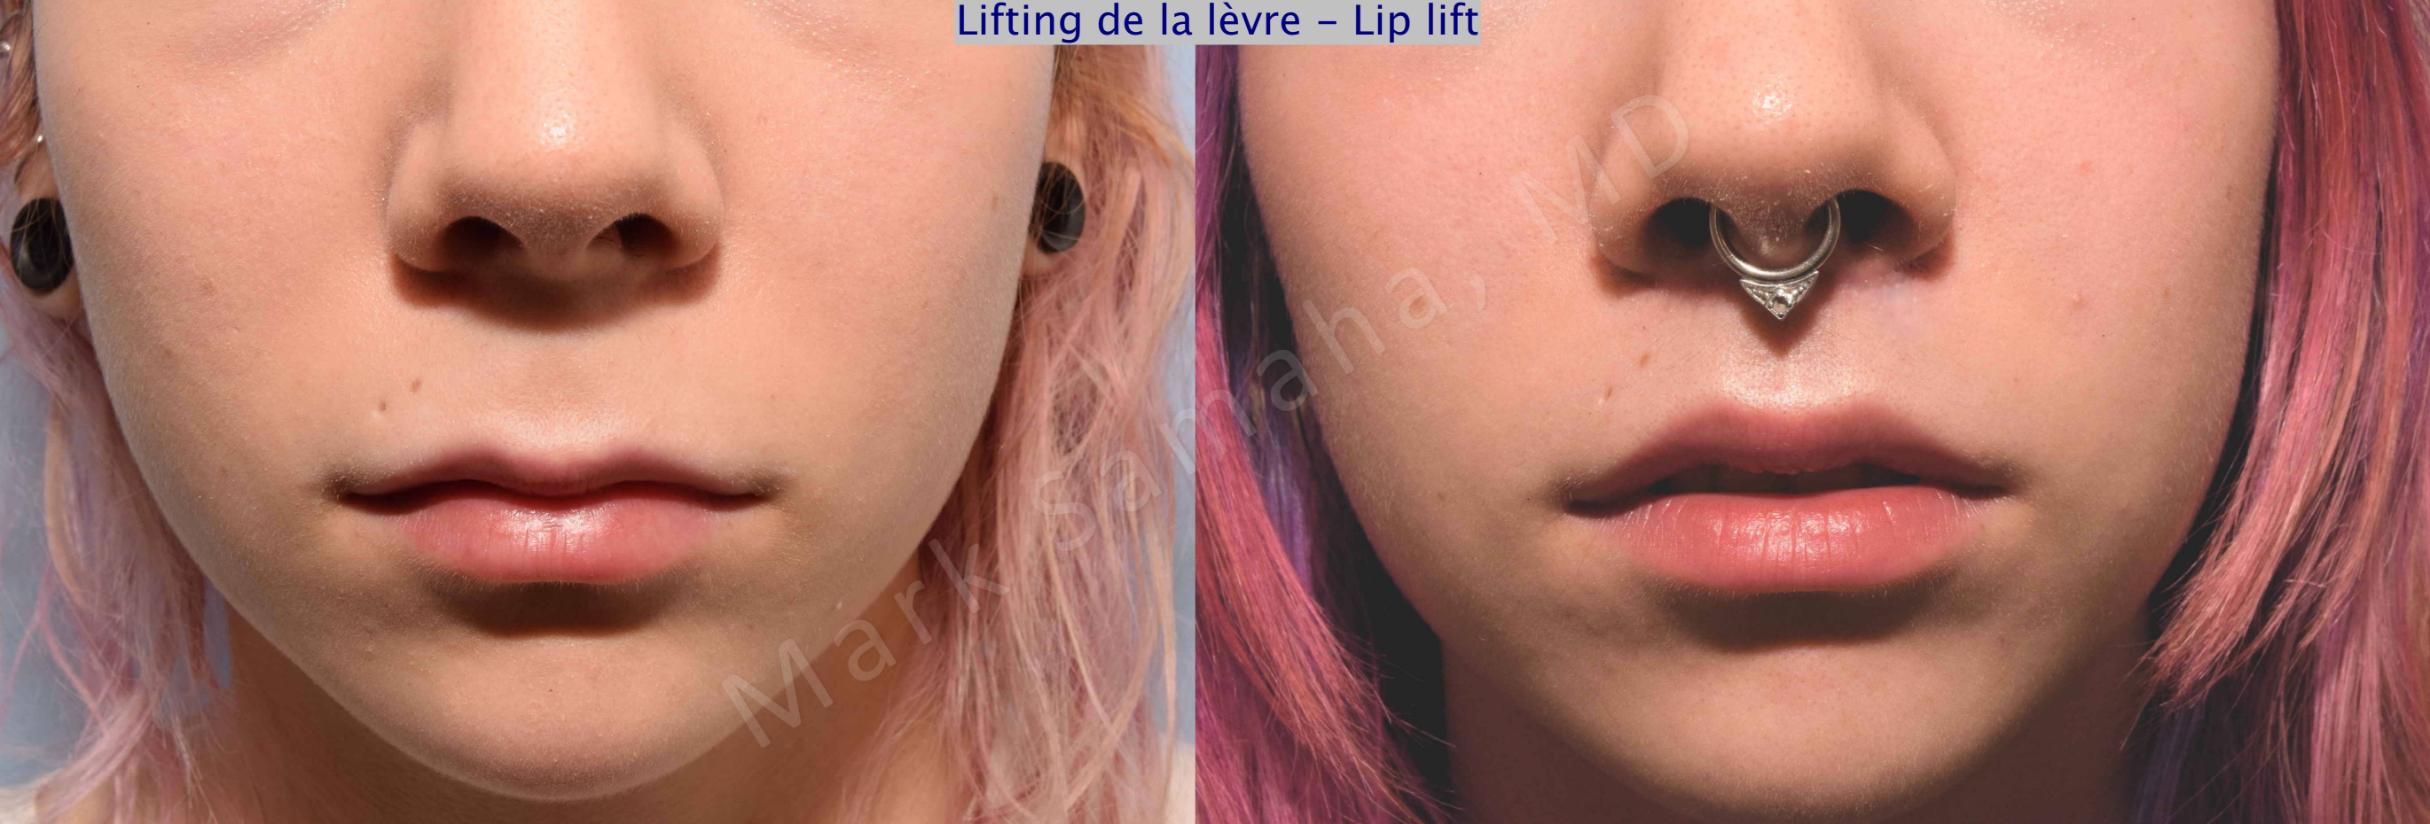 Before & After Lifting de la lèvre supérieure / Lip Lift  Case 71 View #1 View in Mount Royal, QC